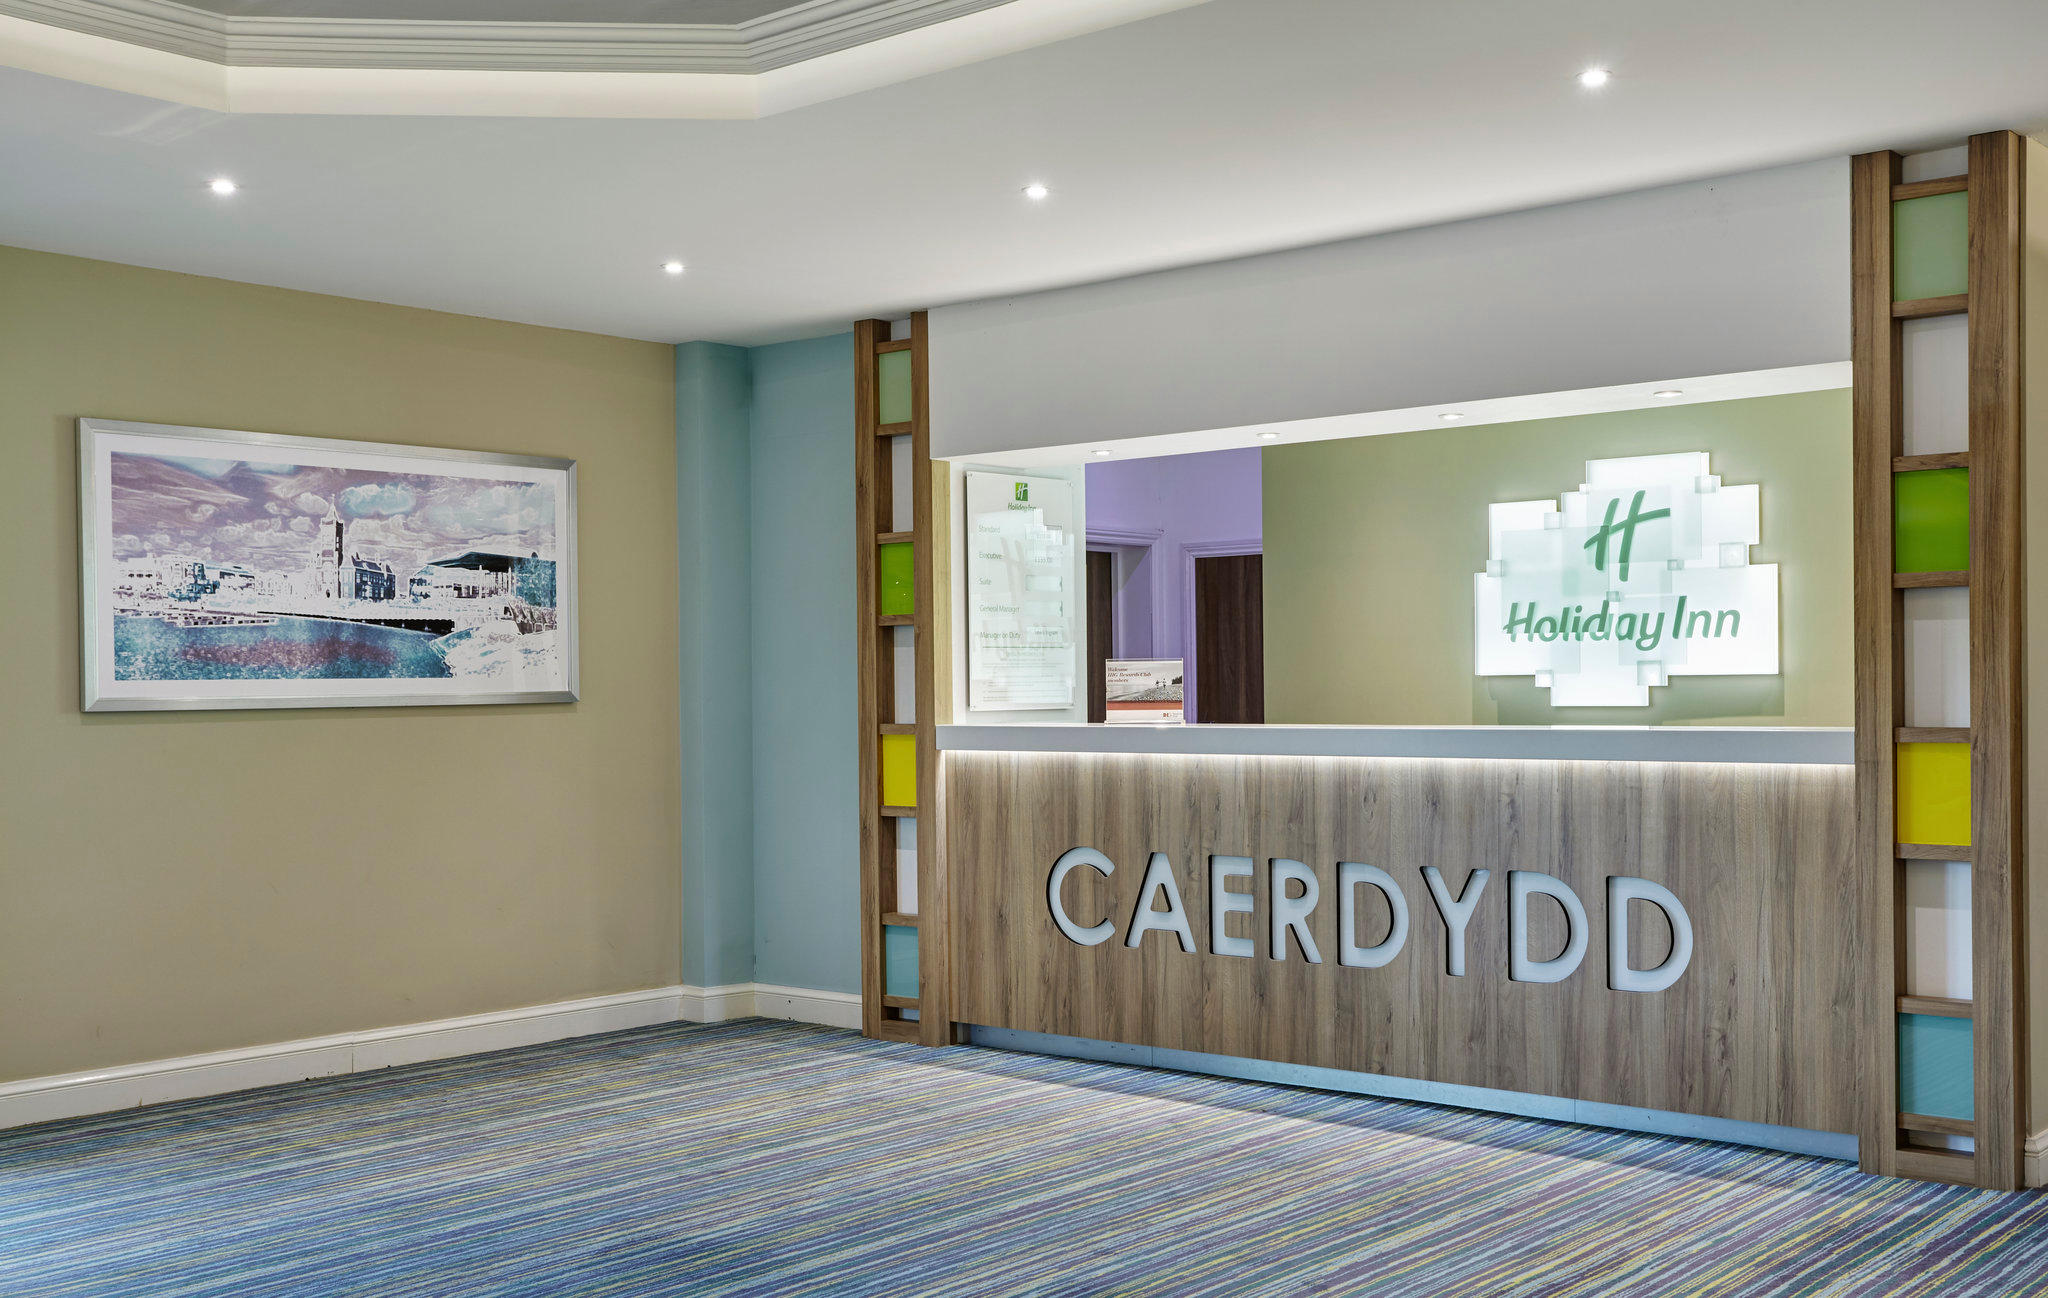 Holiday Inn Cardiff - North M4, JCT.32, an IHG Hotel Cardiff 02920 522262